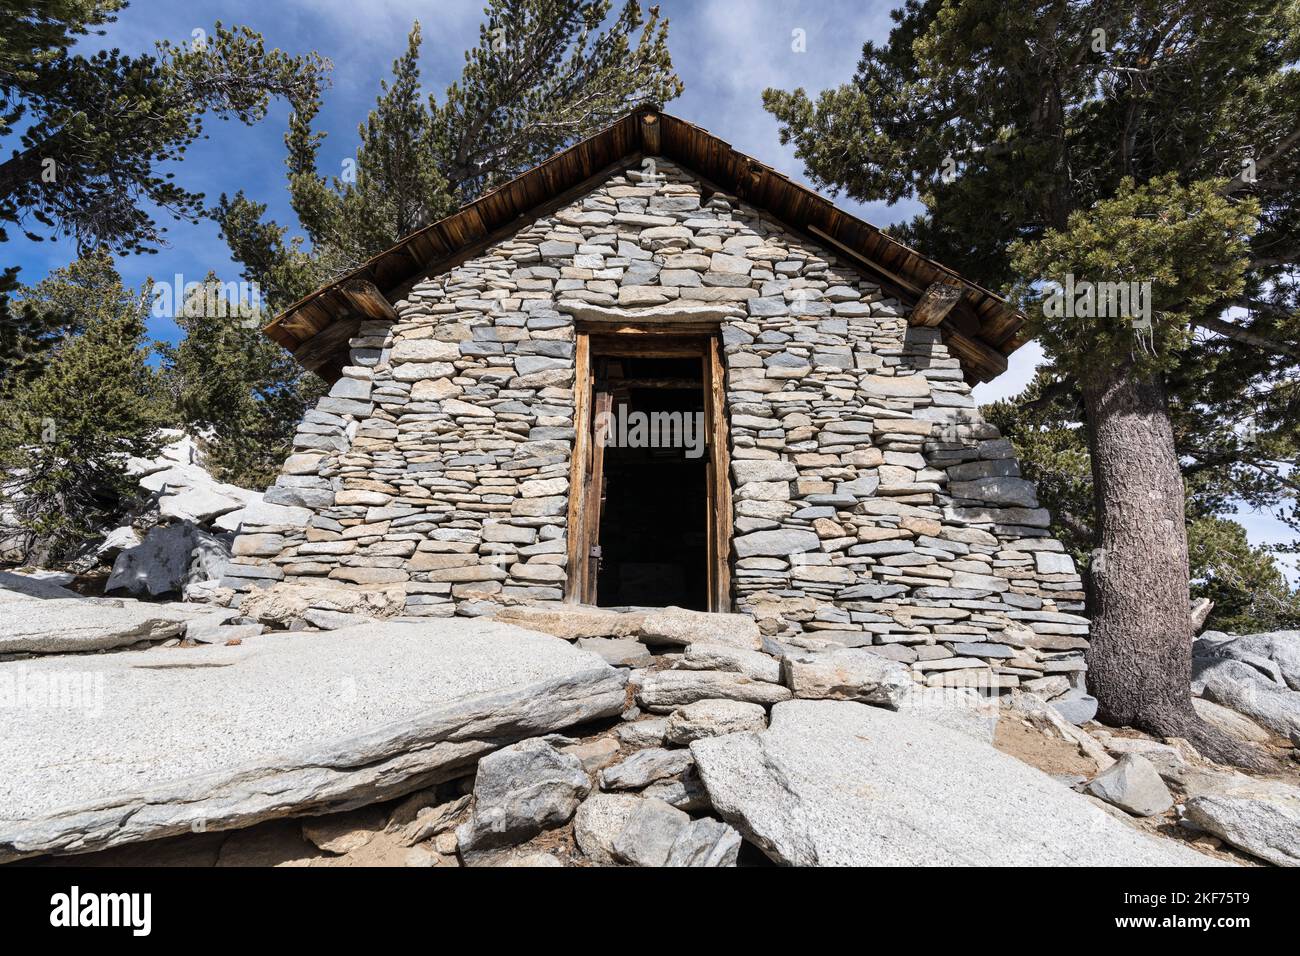 Historische Steinhütte in der Nähe des Gipfels von San Jacinto Peak in den San Jacinto Mountains oberhalb von Palm Springs, Kalifornien. Stockfoto